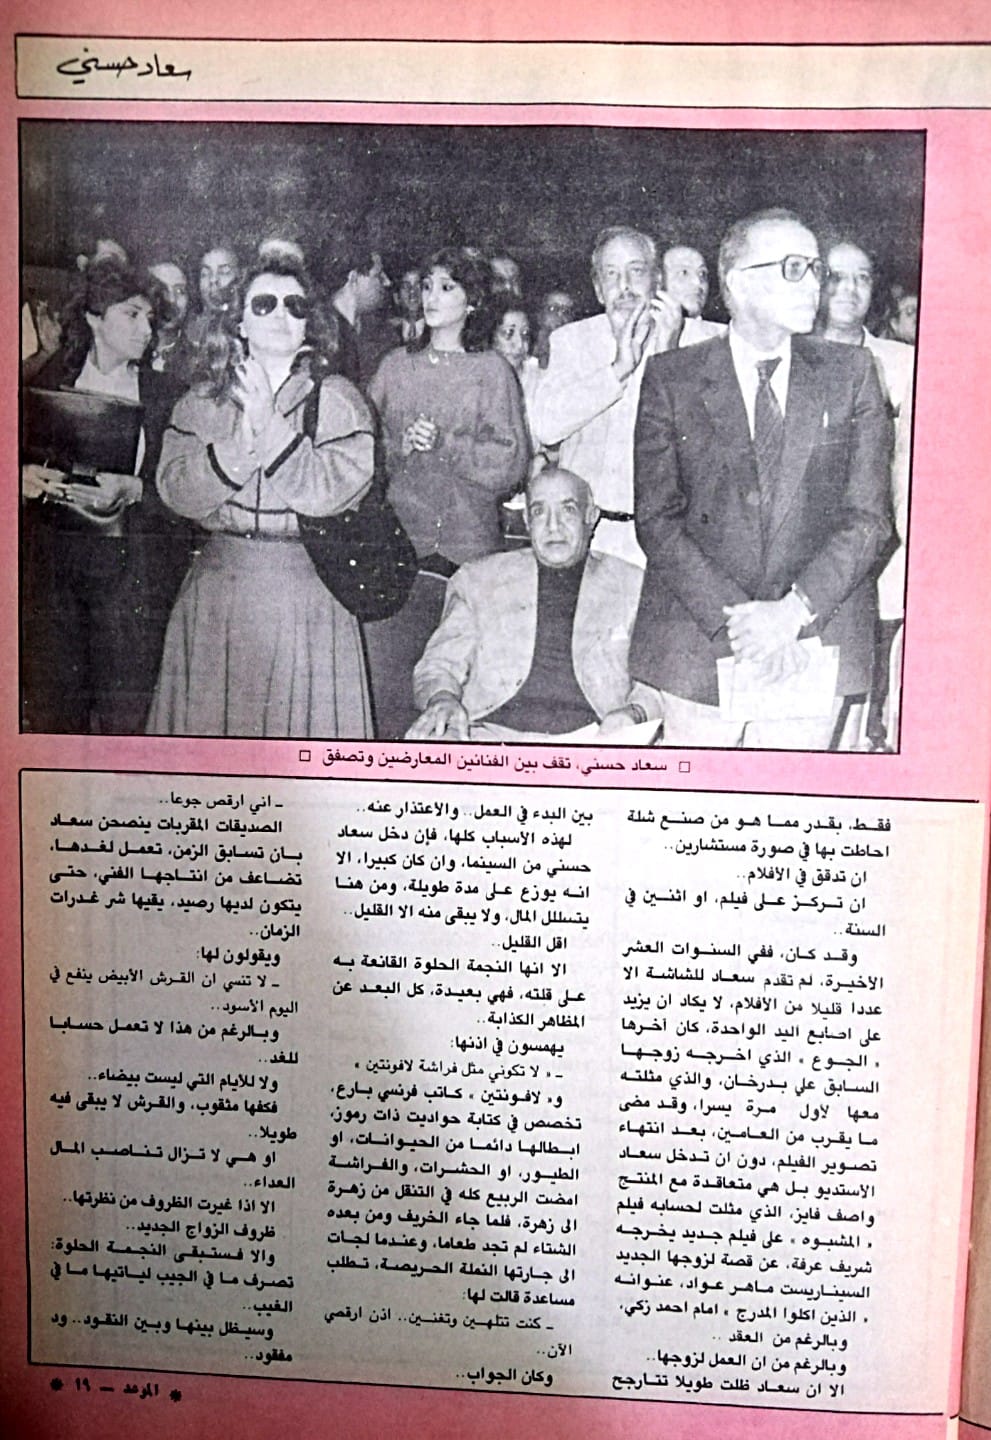 مقال صحفي : سعاد حسني .. بينها وبين الثراء ود .. مفقود ! 1988 م 411